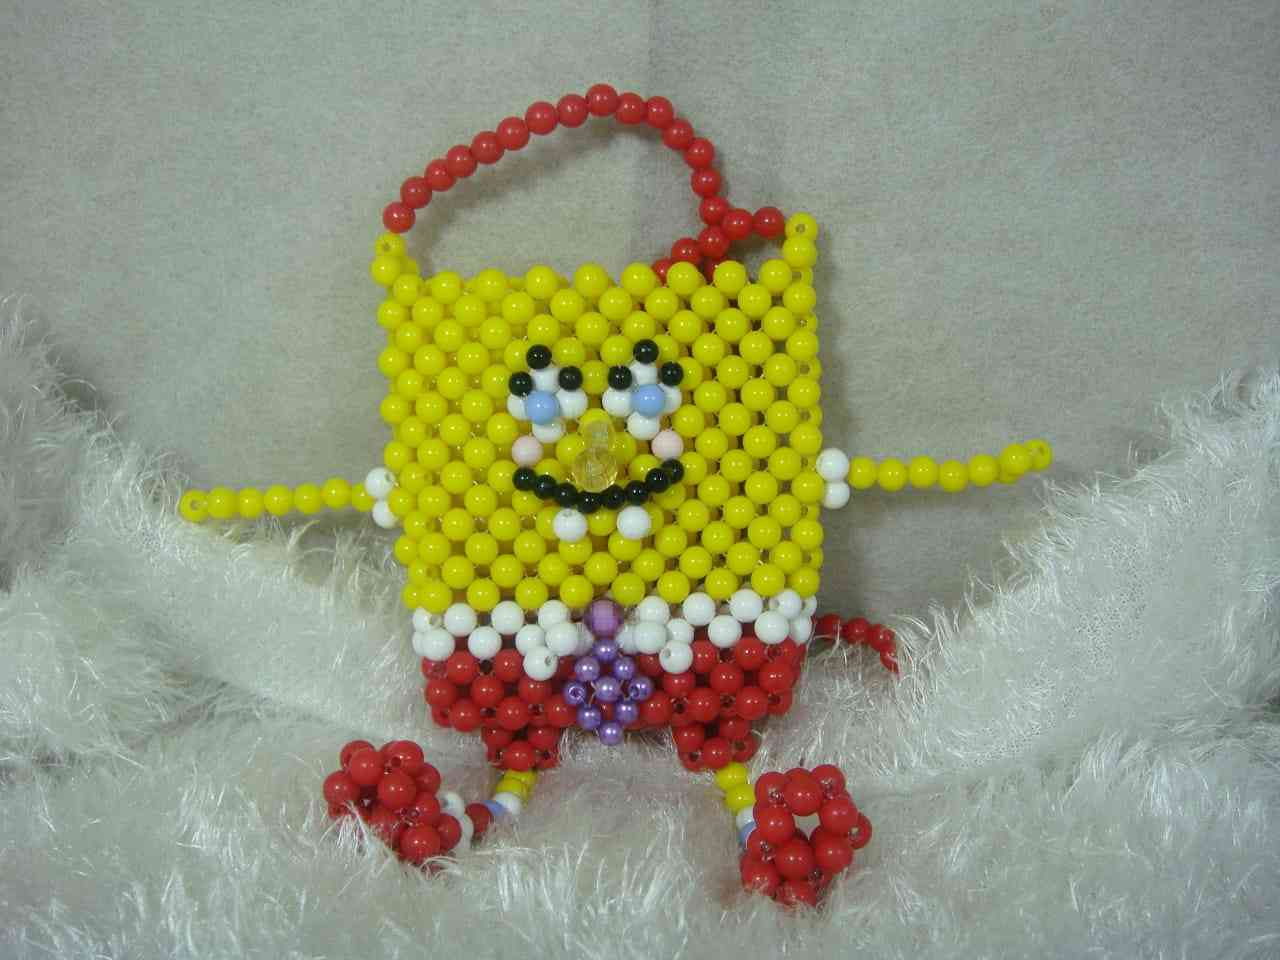 My children's bag in the form of SpongeBob